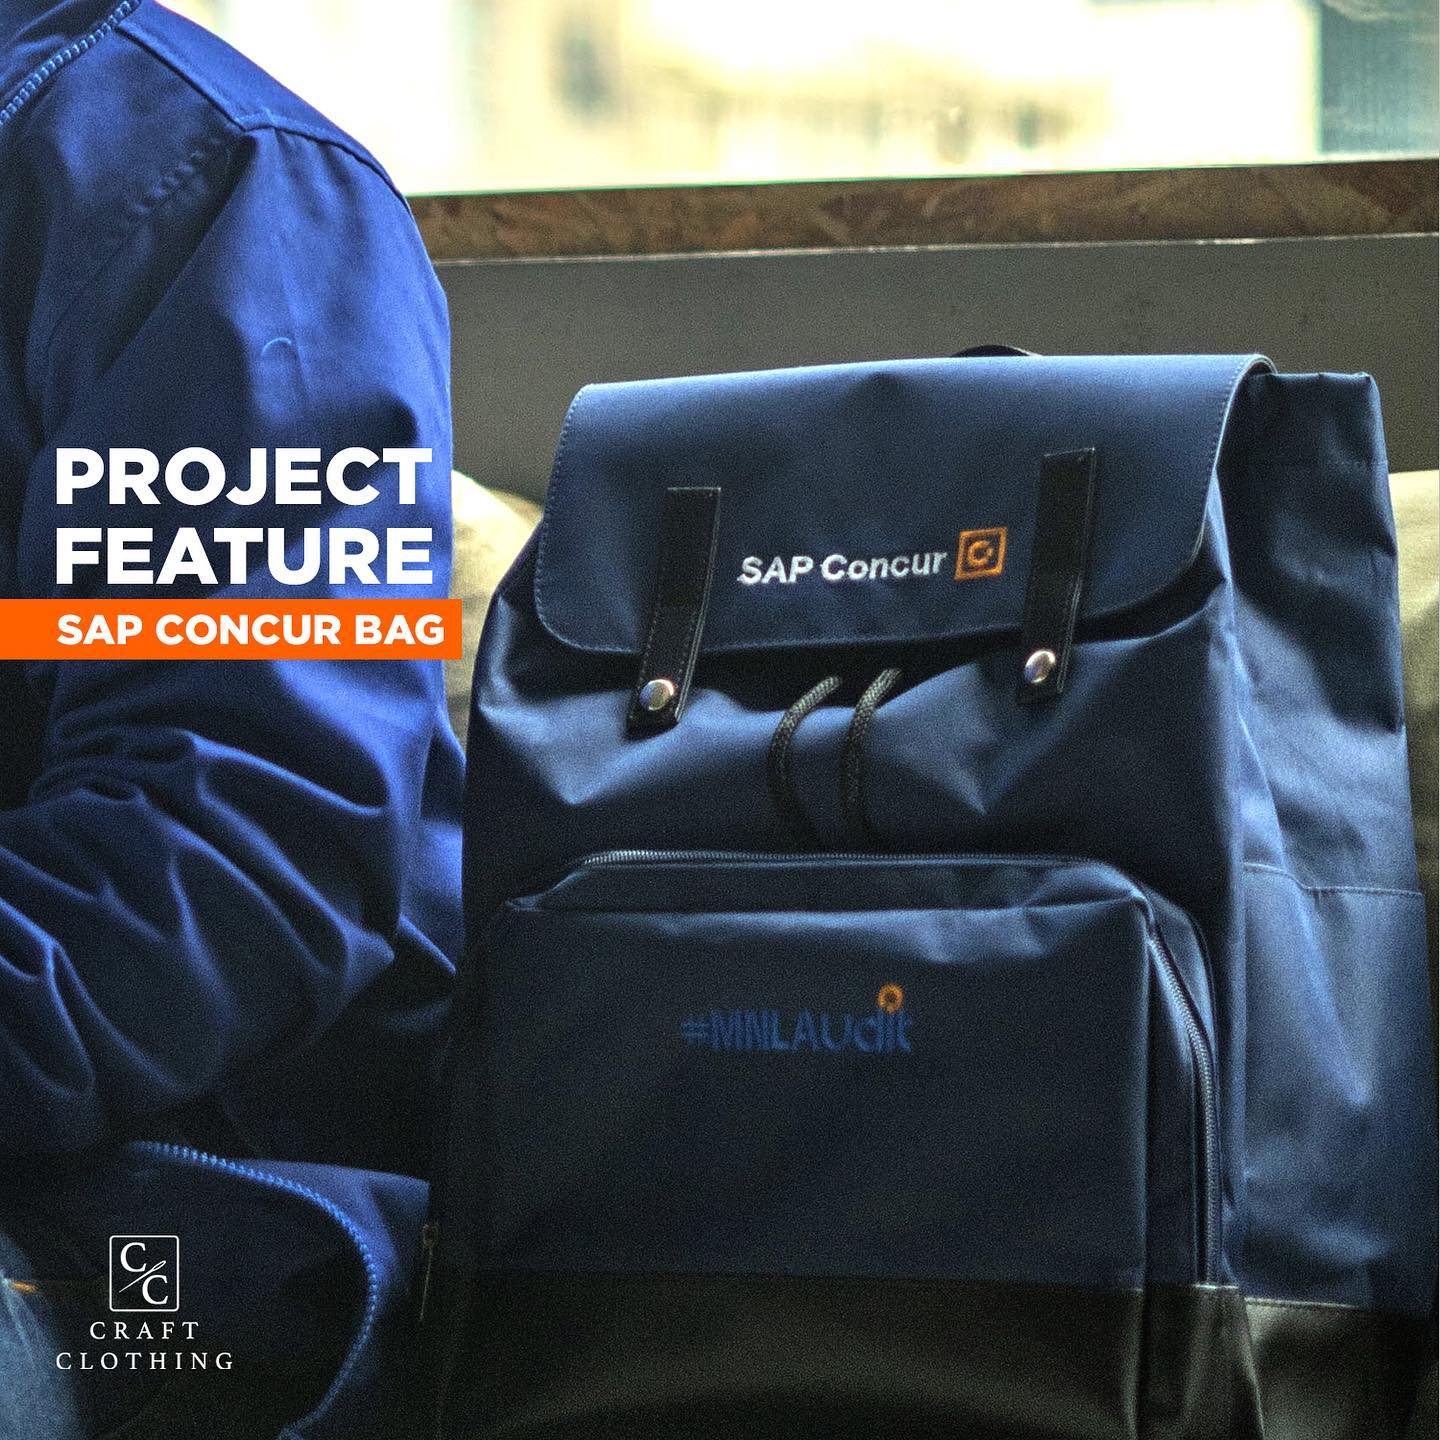 Project Feature: SAP Concur Bag